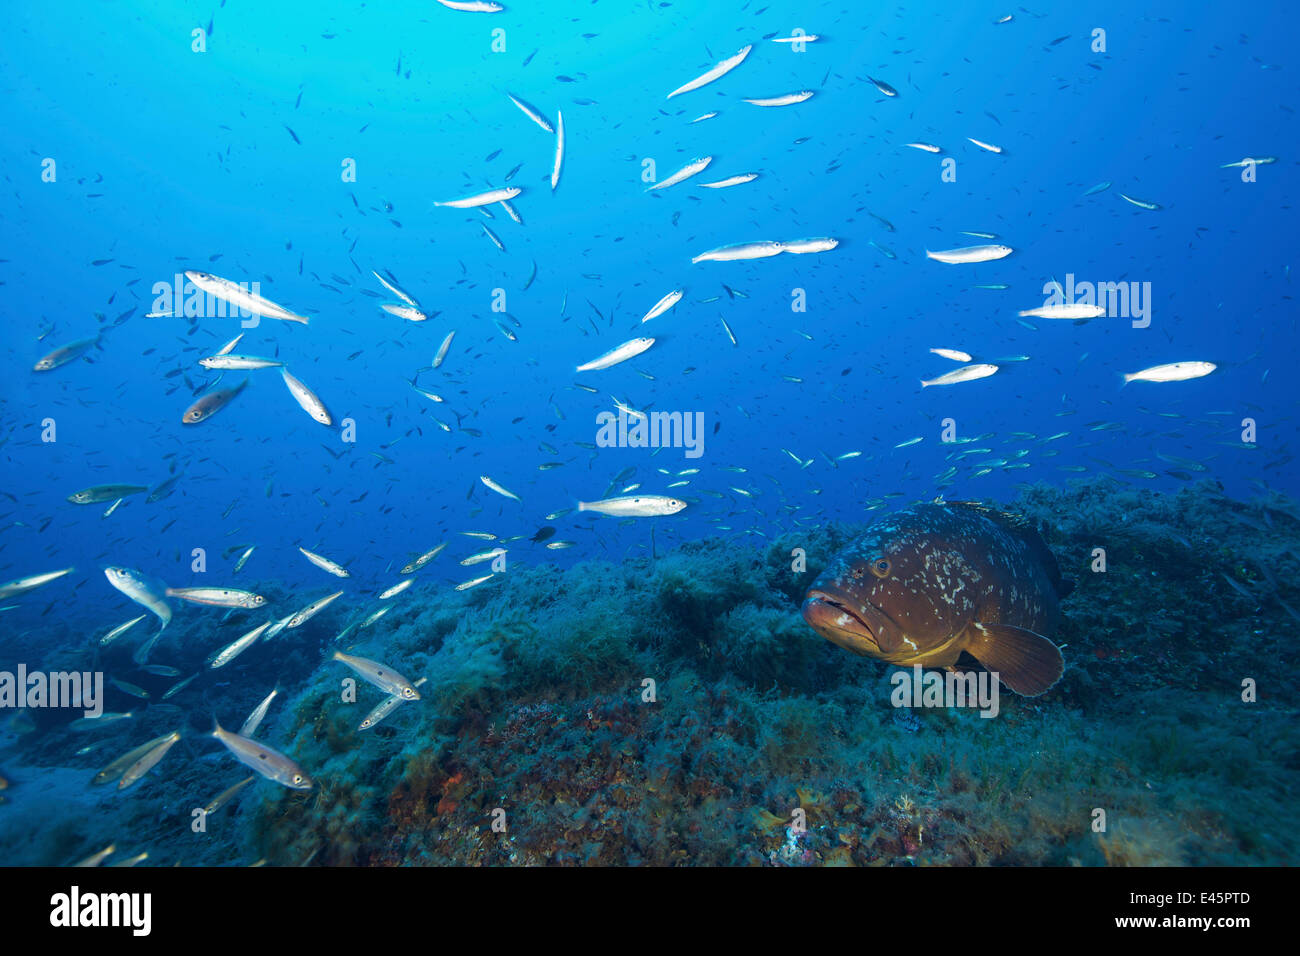 Dusky grouper (Epinephelus marginatus) surrounded by Blotched picarel / Menola (Spicara maena) off the coast of Capraia. Tuscany, Italy, August. Stock Photo